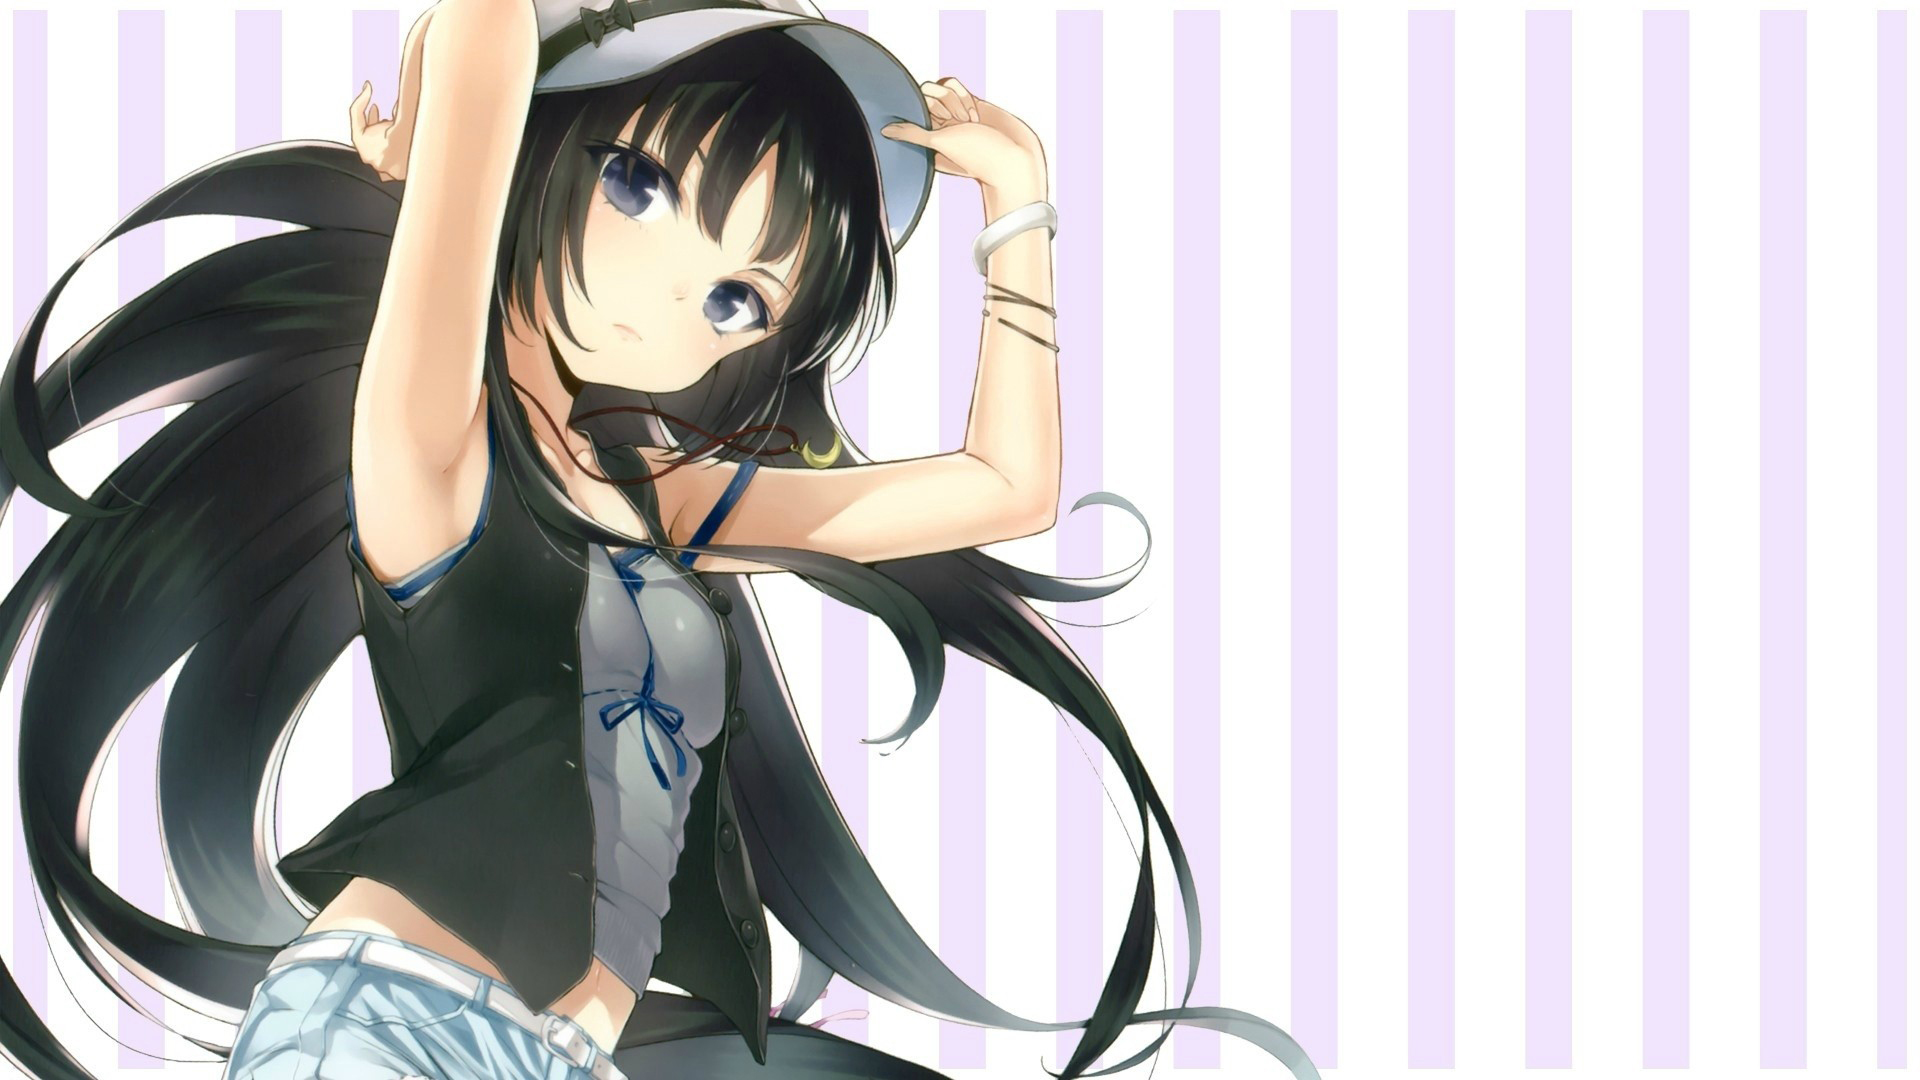 Anime-Wallpaper-Desktop-Background-12 152 Anime Wallpapers For Your Desktop Background